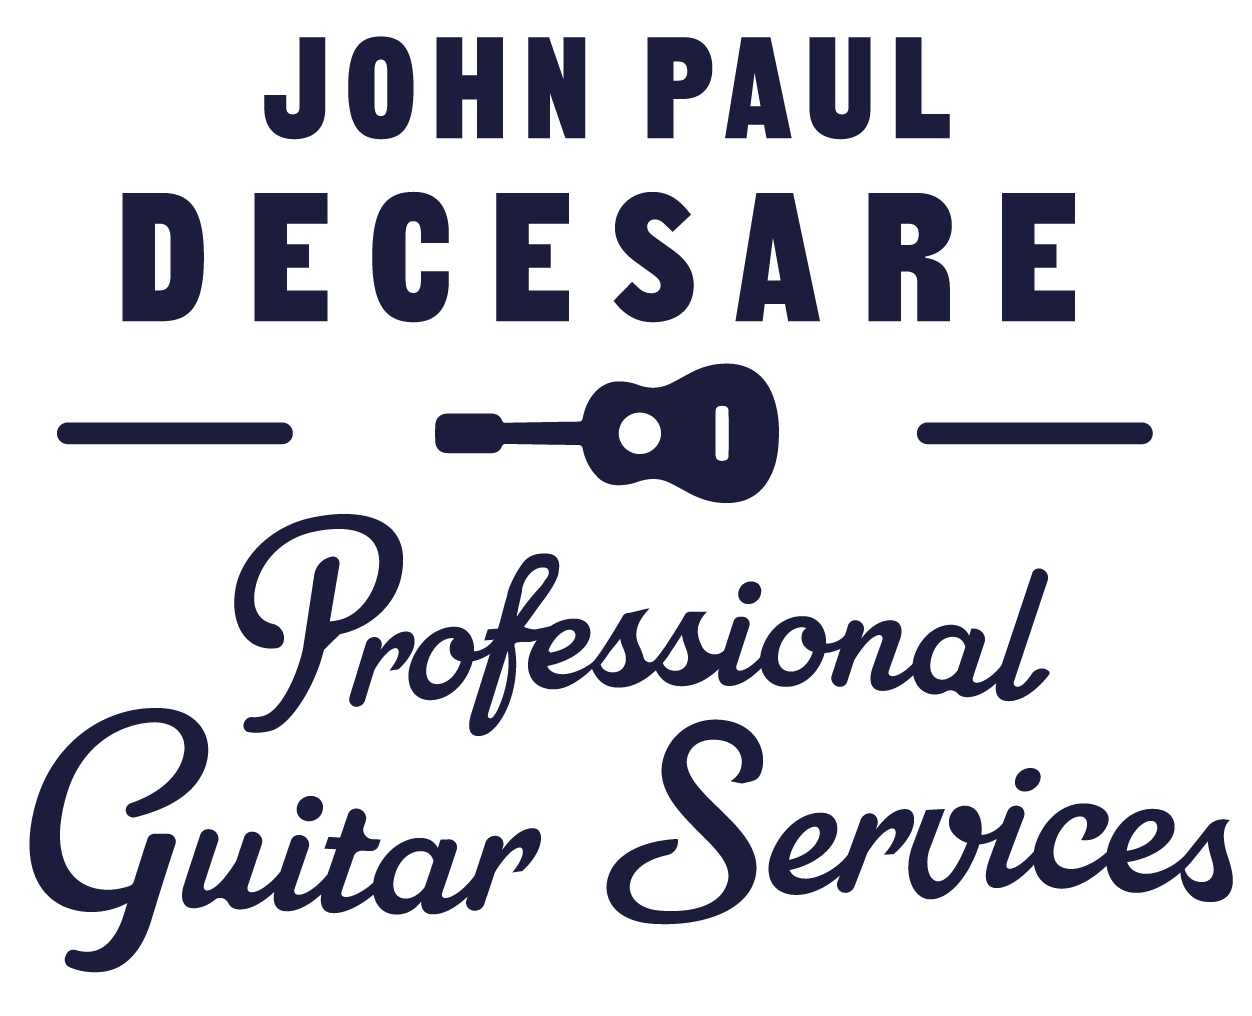 John Paul Decesare